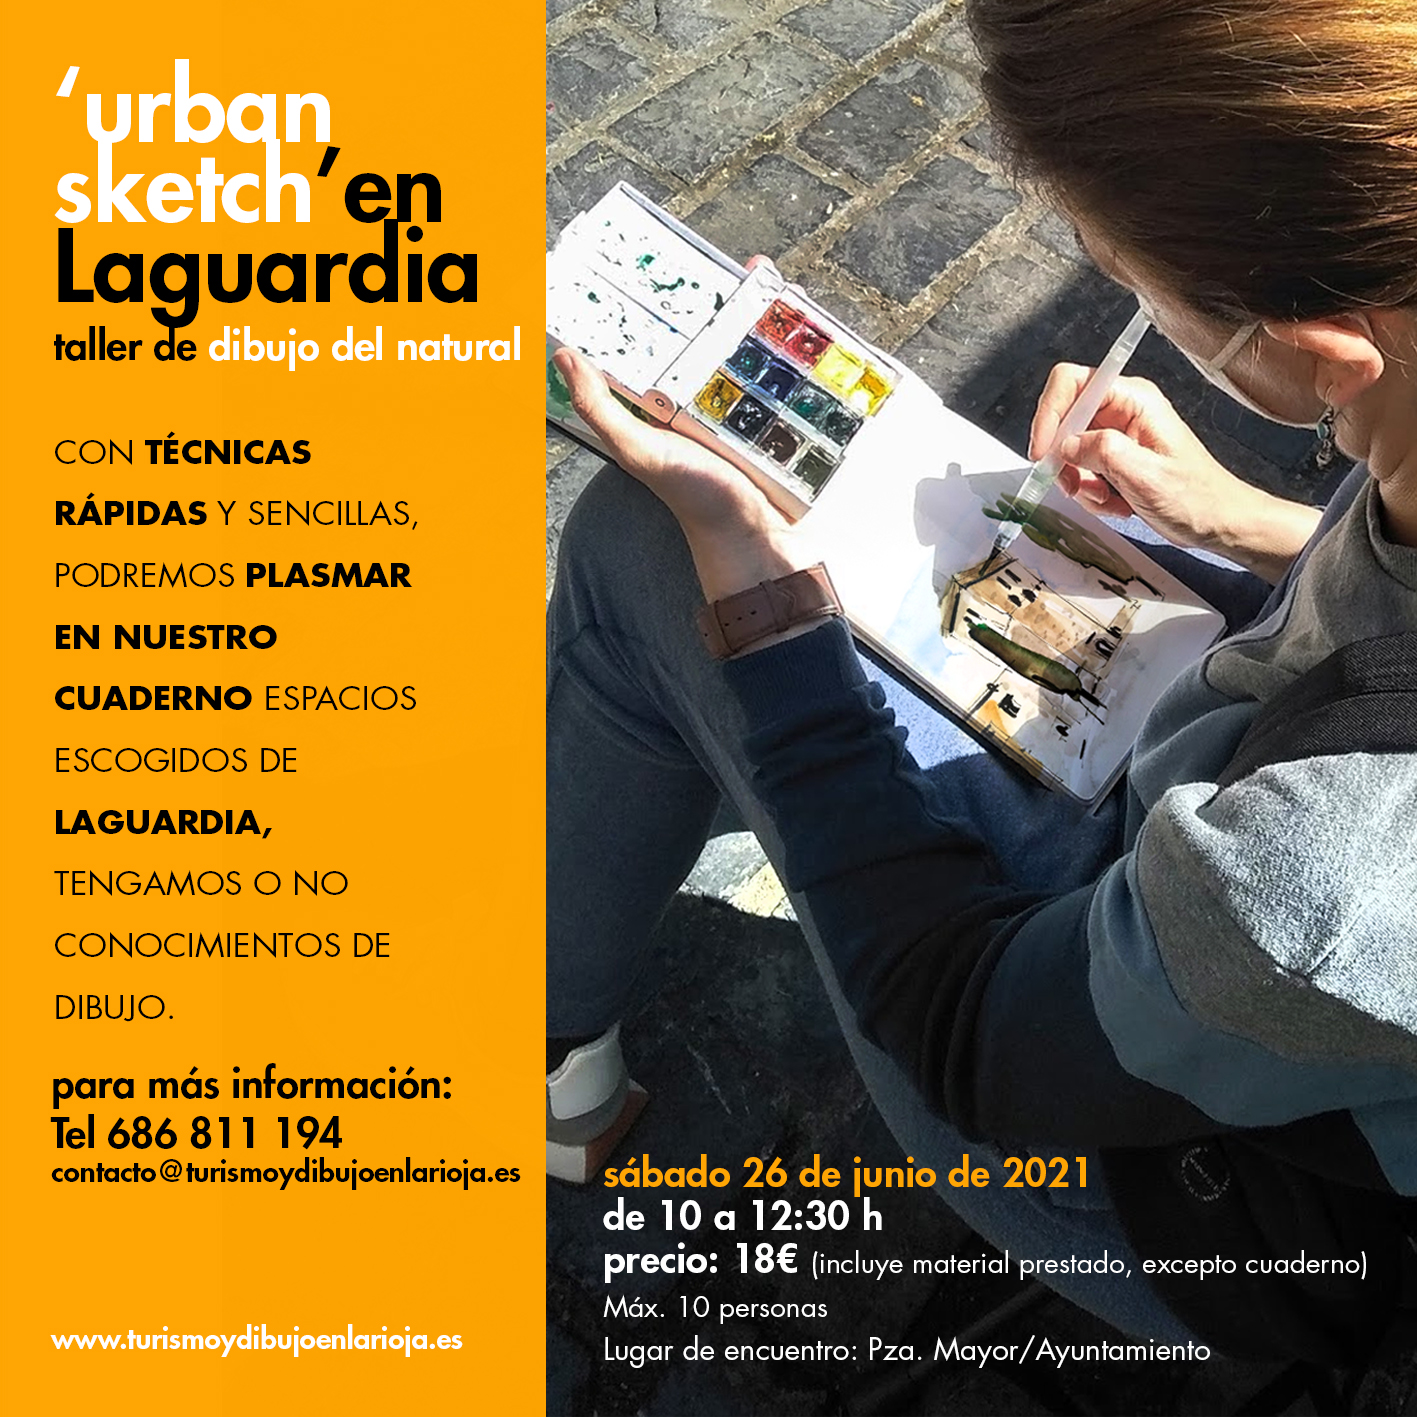 Urban Sketch en Laguardia